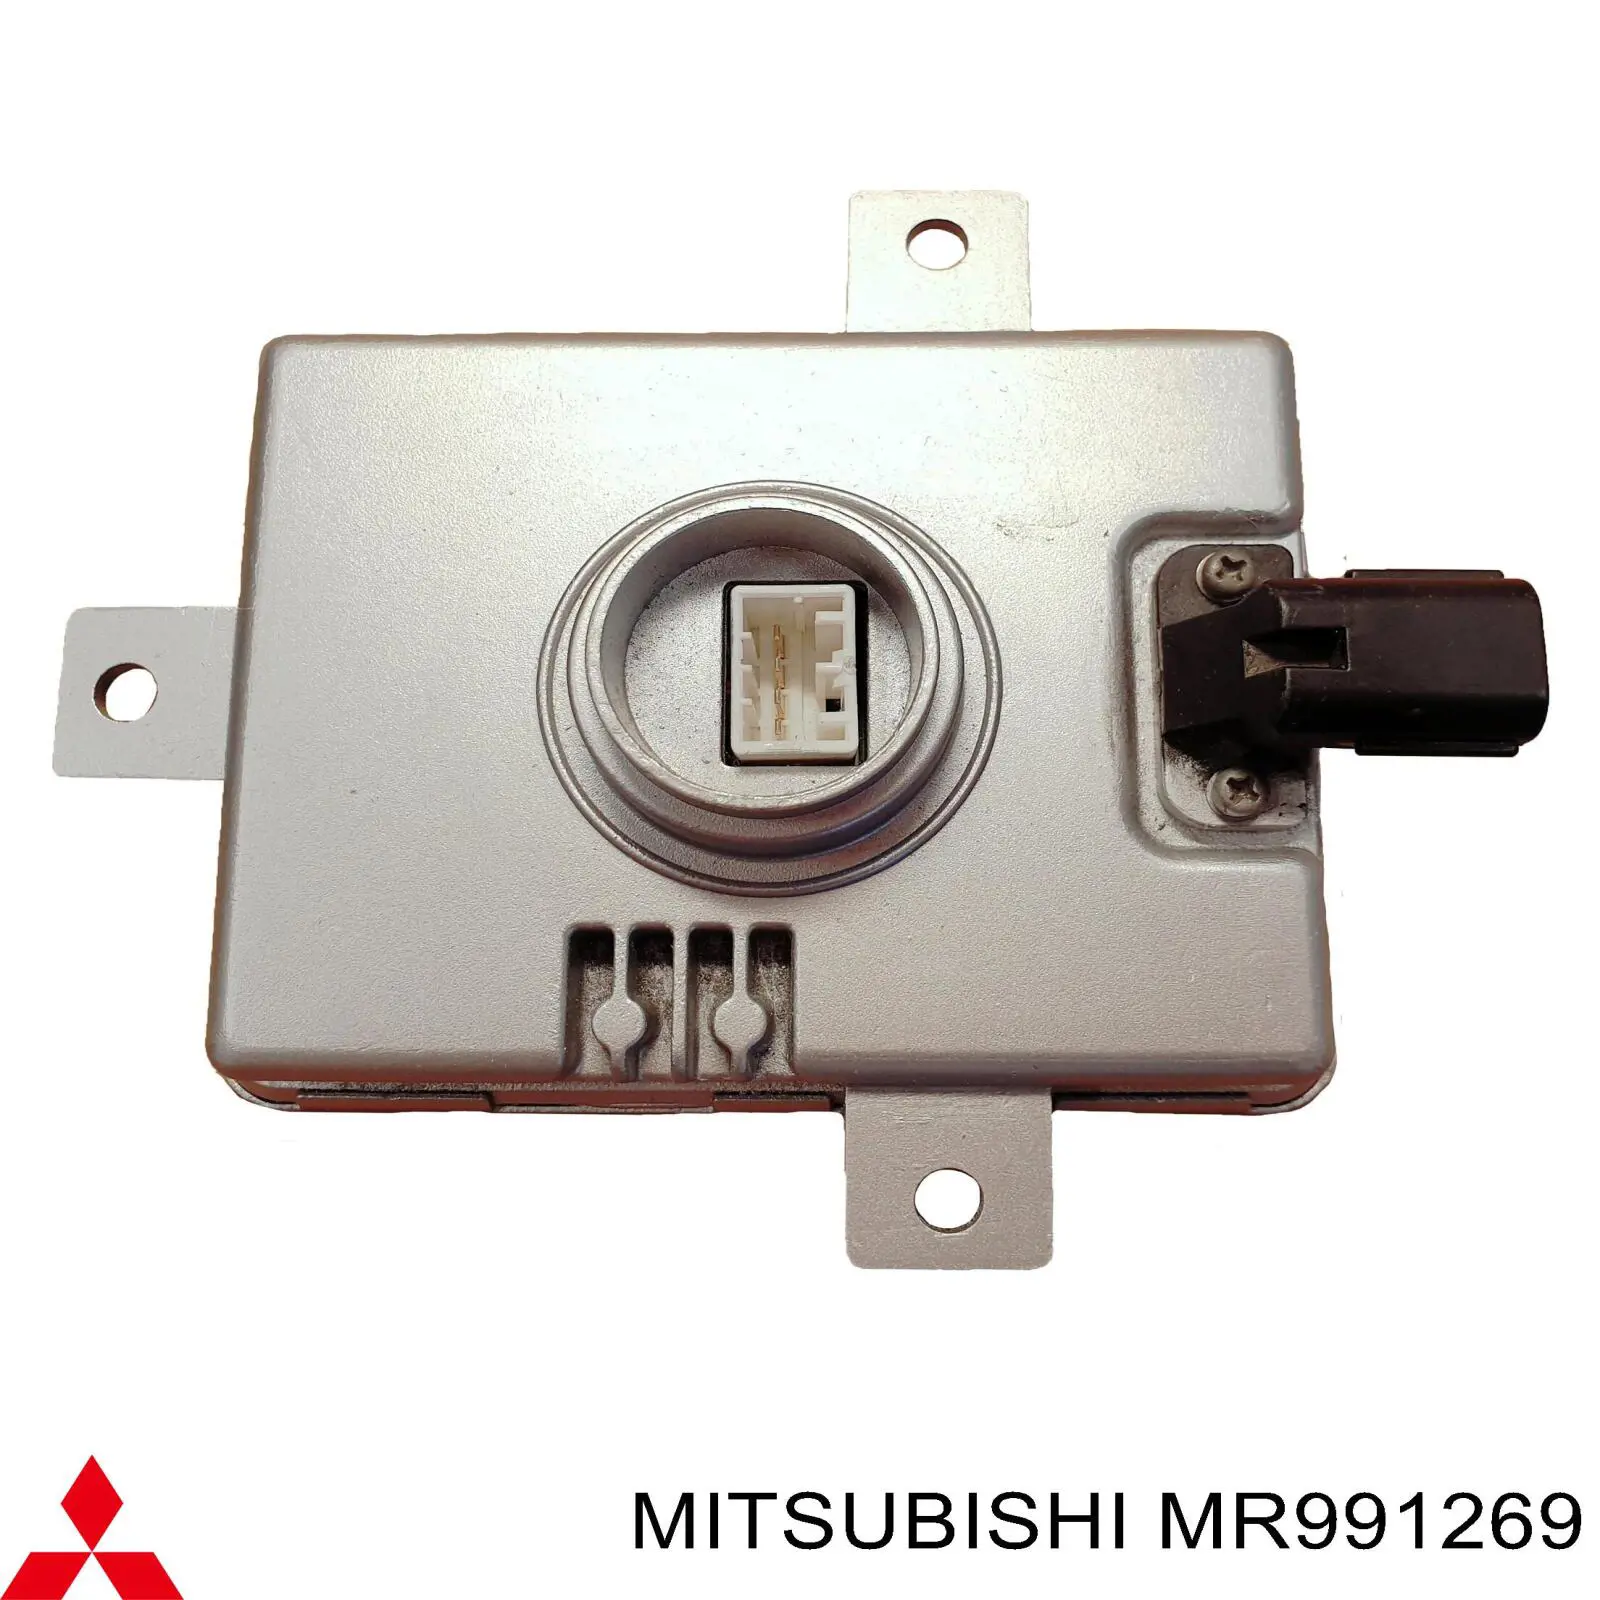 MR991269 Mitsubishi bobina de reactancia, lámpara de descarga de gas